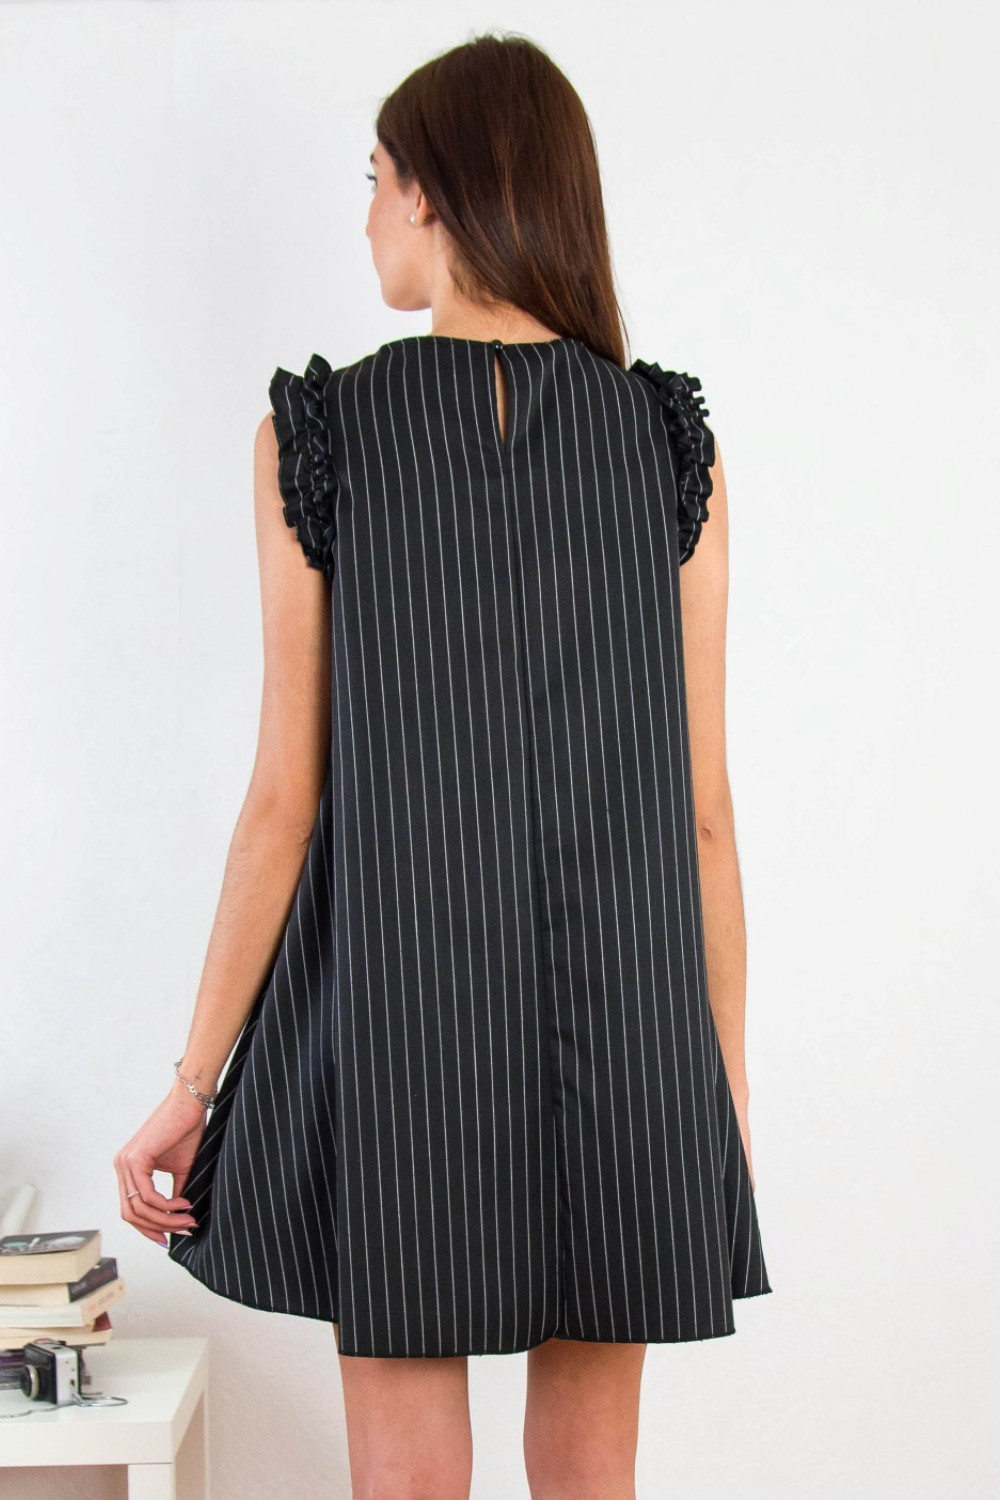 Γυναικείο μαύρο ριγέ φόρεμα σε Α γραμμή 91405